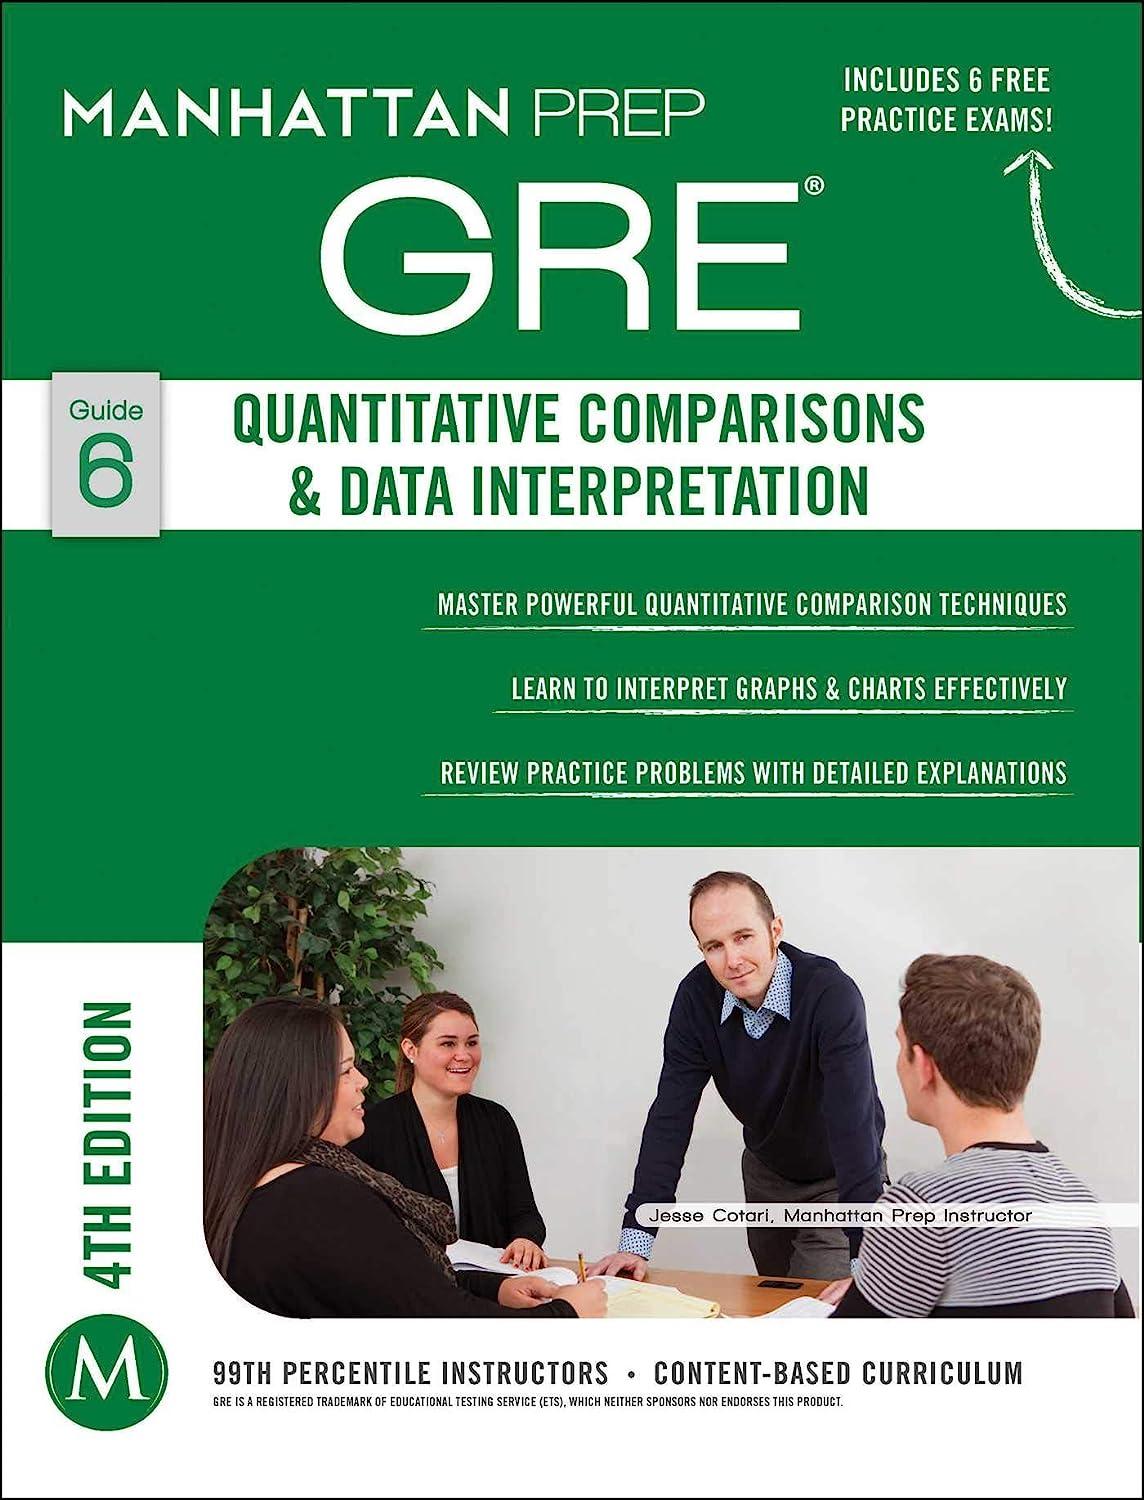 gre quantitative comparisons and data interpretation guide 6 4th edition manhattan prep 1937707873,